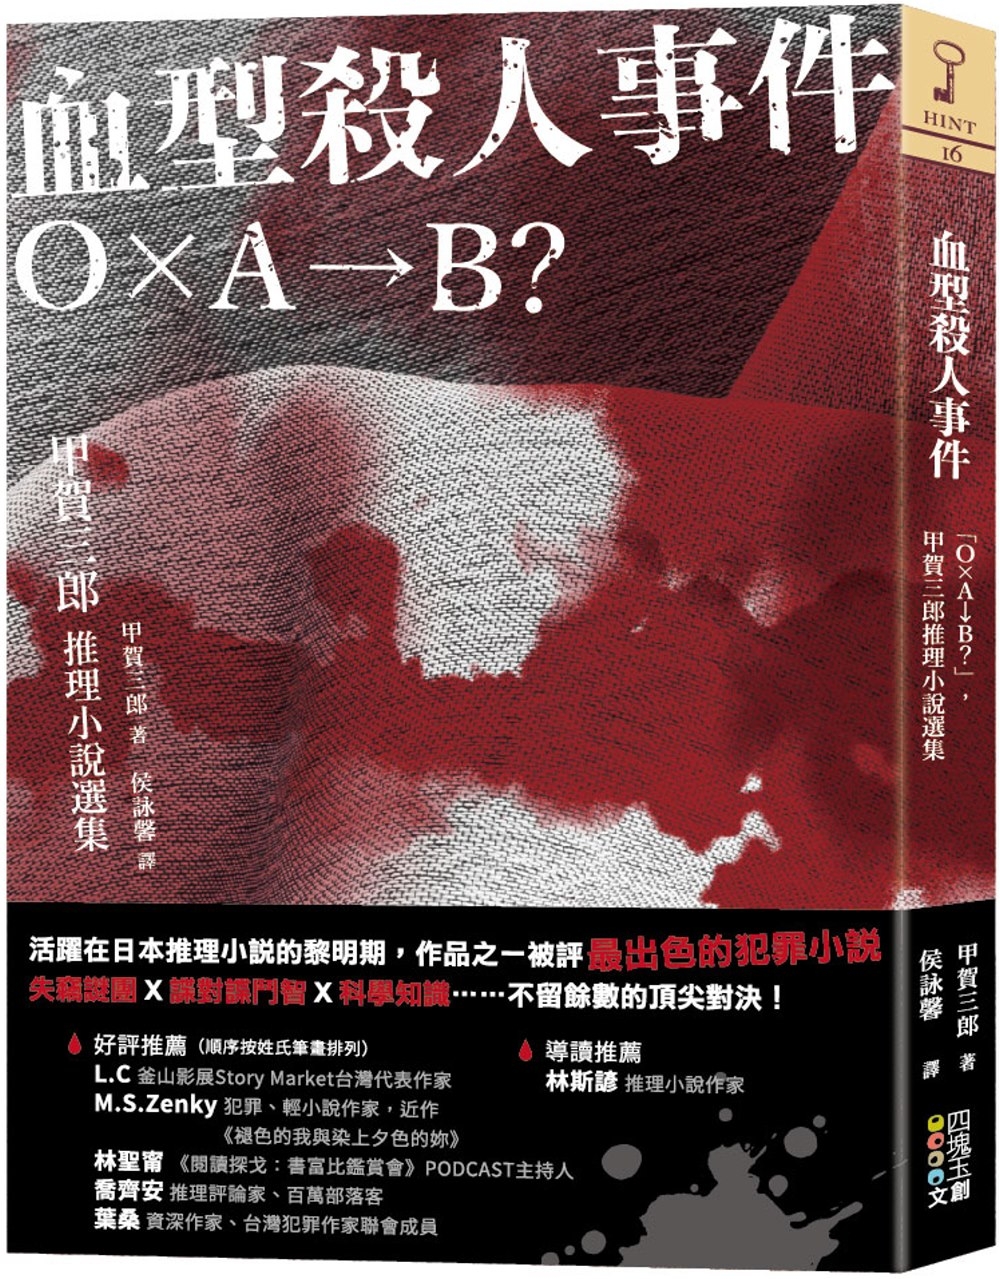 血型殺人事件：「Ｏ×Ａ→Ｂ？」，甲賀三郎推理小說選集